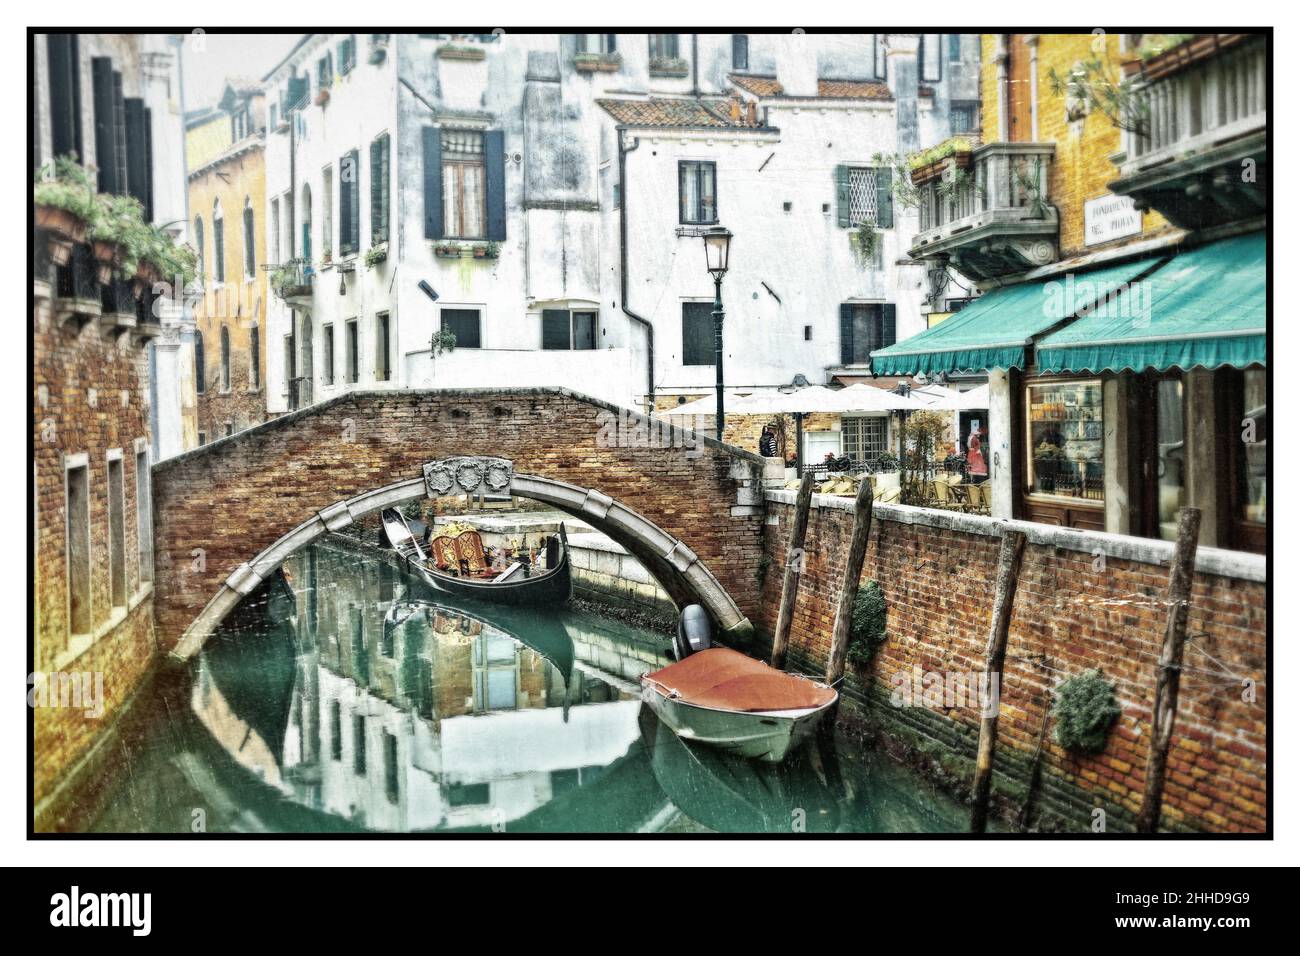 Romantique canaux vénitiens.Vieilles rues étroites de Venise.Gondoles et ponts.Image rétro.Italie Banque D'Images